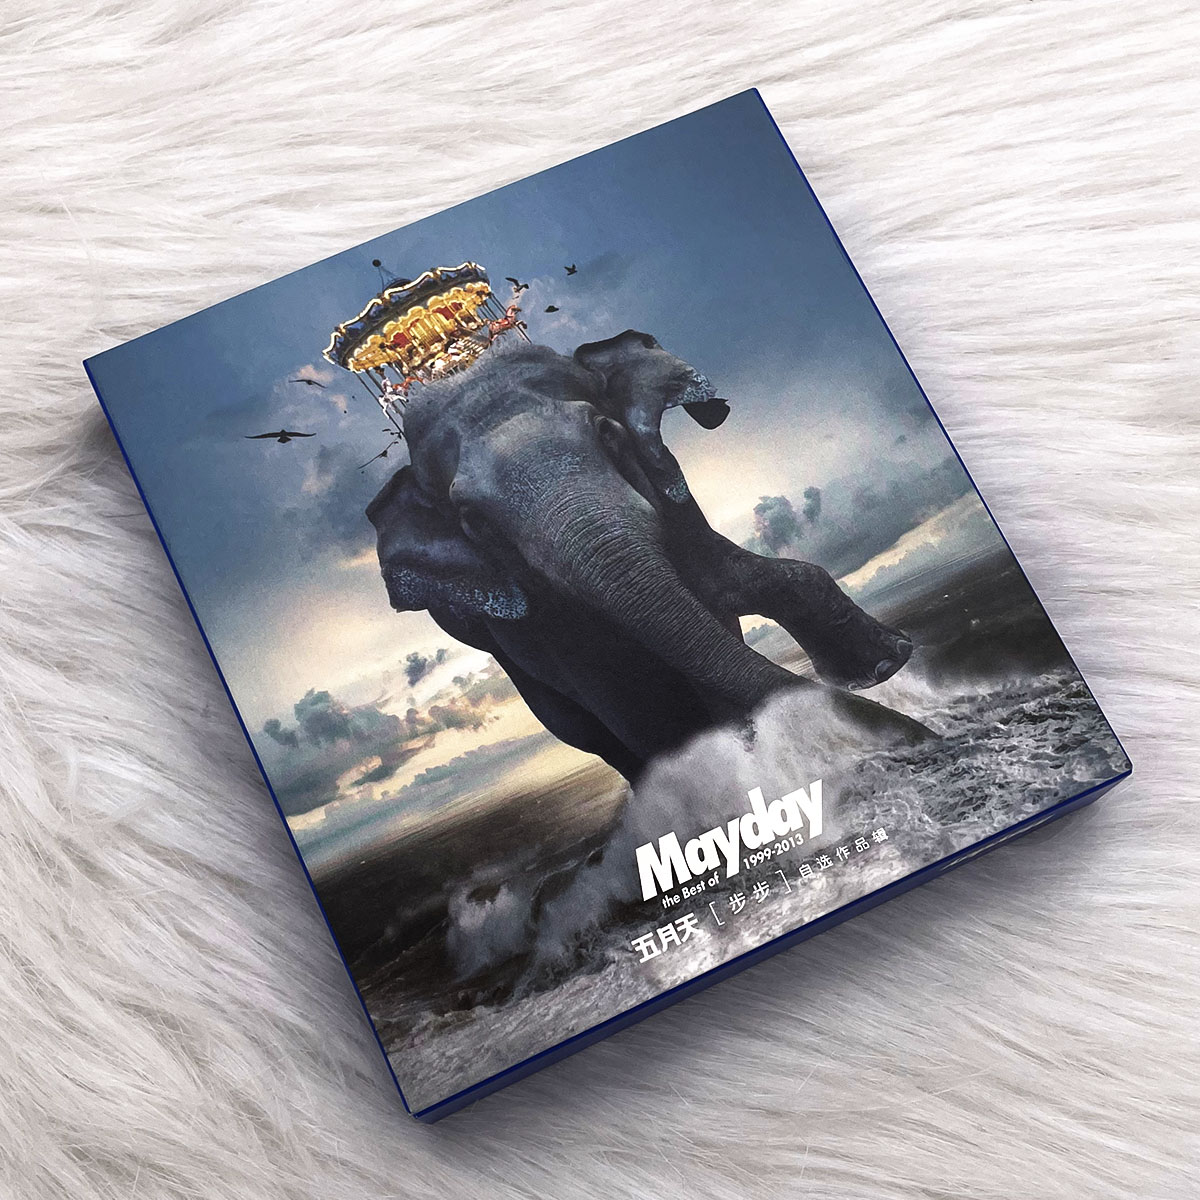 官方正版唱片 五月天专辑 步步自选作品辑 2CD+歌词本 巨象登陆版